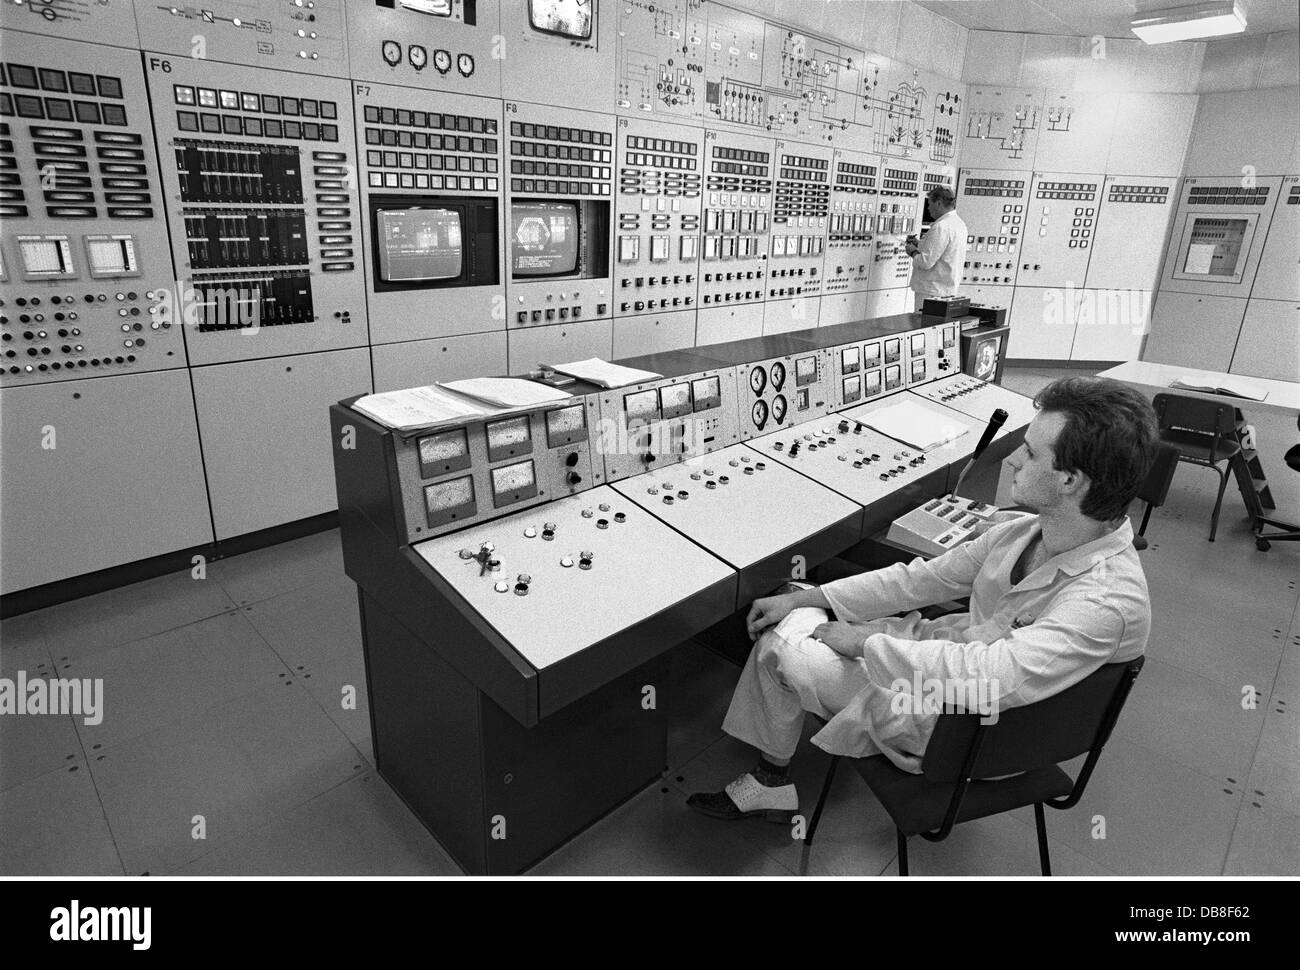 Énergie, énergie nucléaire, centre nerveux du réacteur de recherche du type WWR-S, dans le centre de recherche nucléaire, alimenté par l'Institut central de physique nucléaire, en service depuis 1957, type de construction russe, puissance 10 MW, éteint en juin 1991, Rossendorf près de Dresde, Allemagne de l'est, 30.5.1990, droits additionnels-Clearences-non disponible Banque D'Images